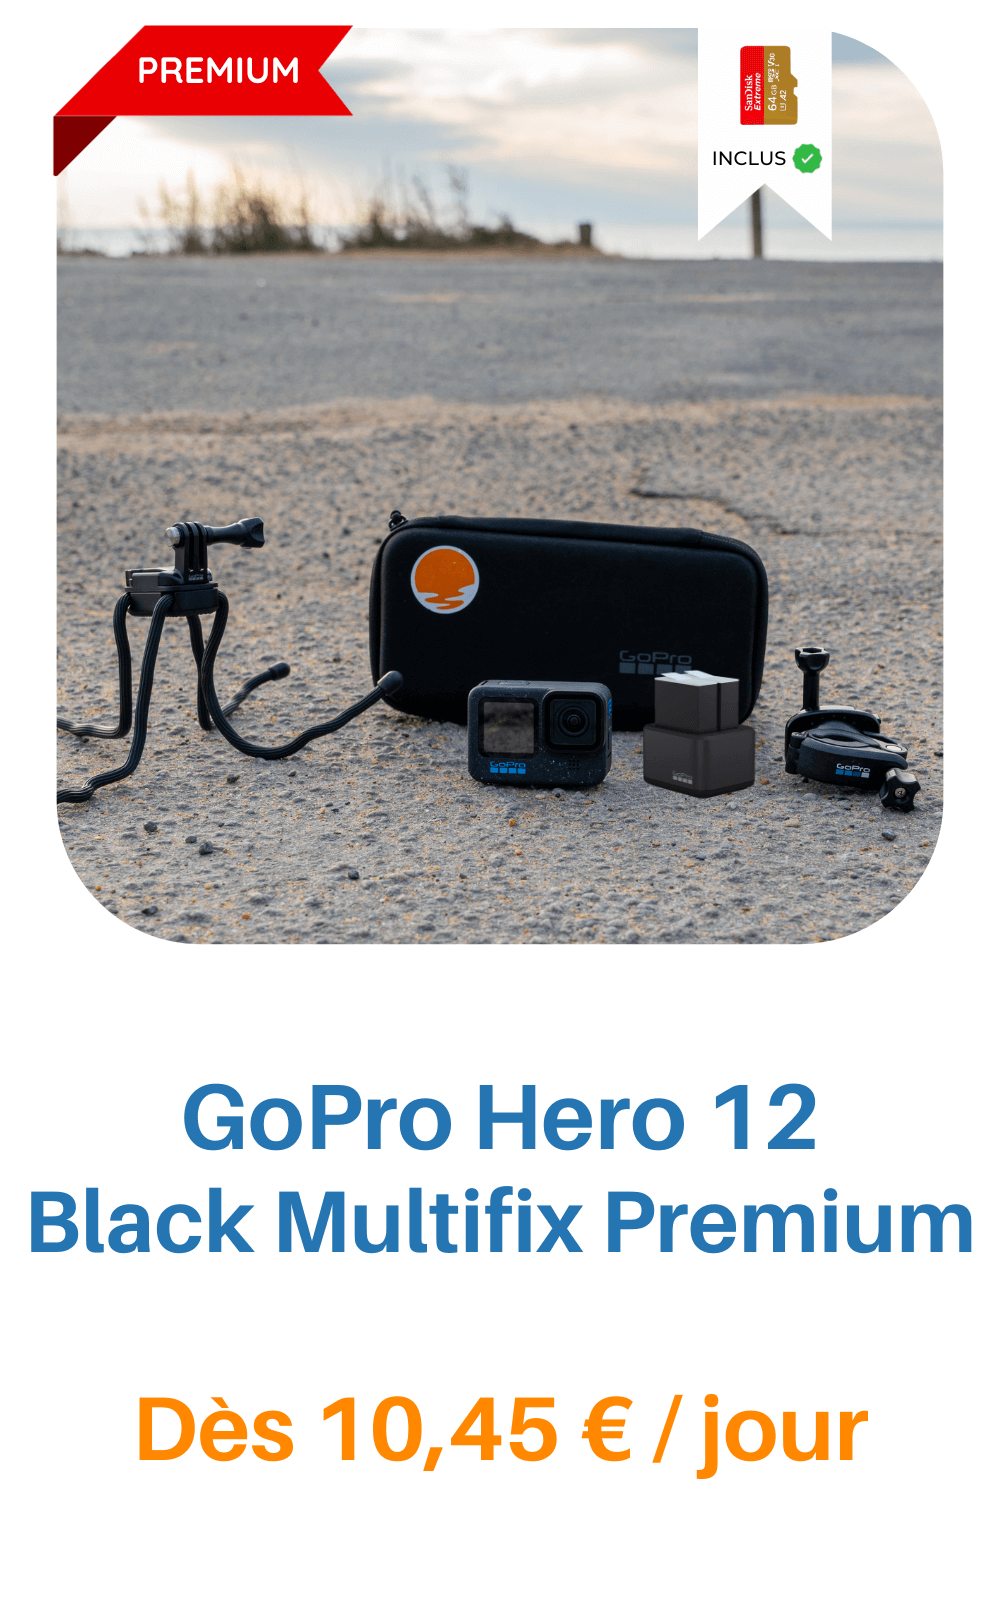 Louez un(e) Gopro hero 10 + Access, à partir de 22,50 € chez